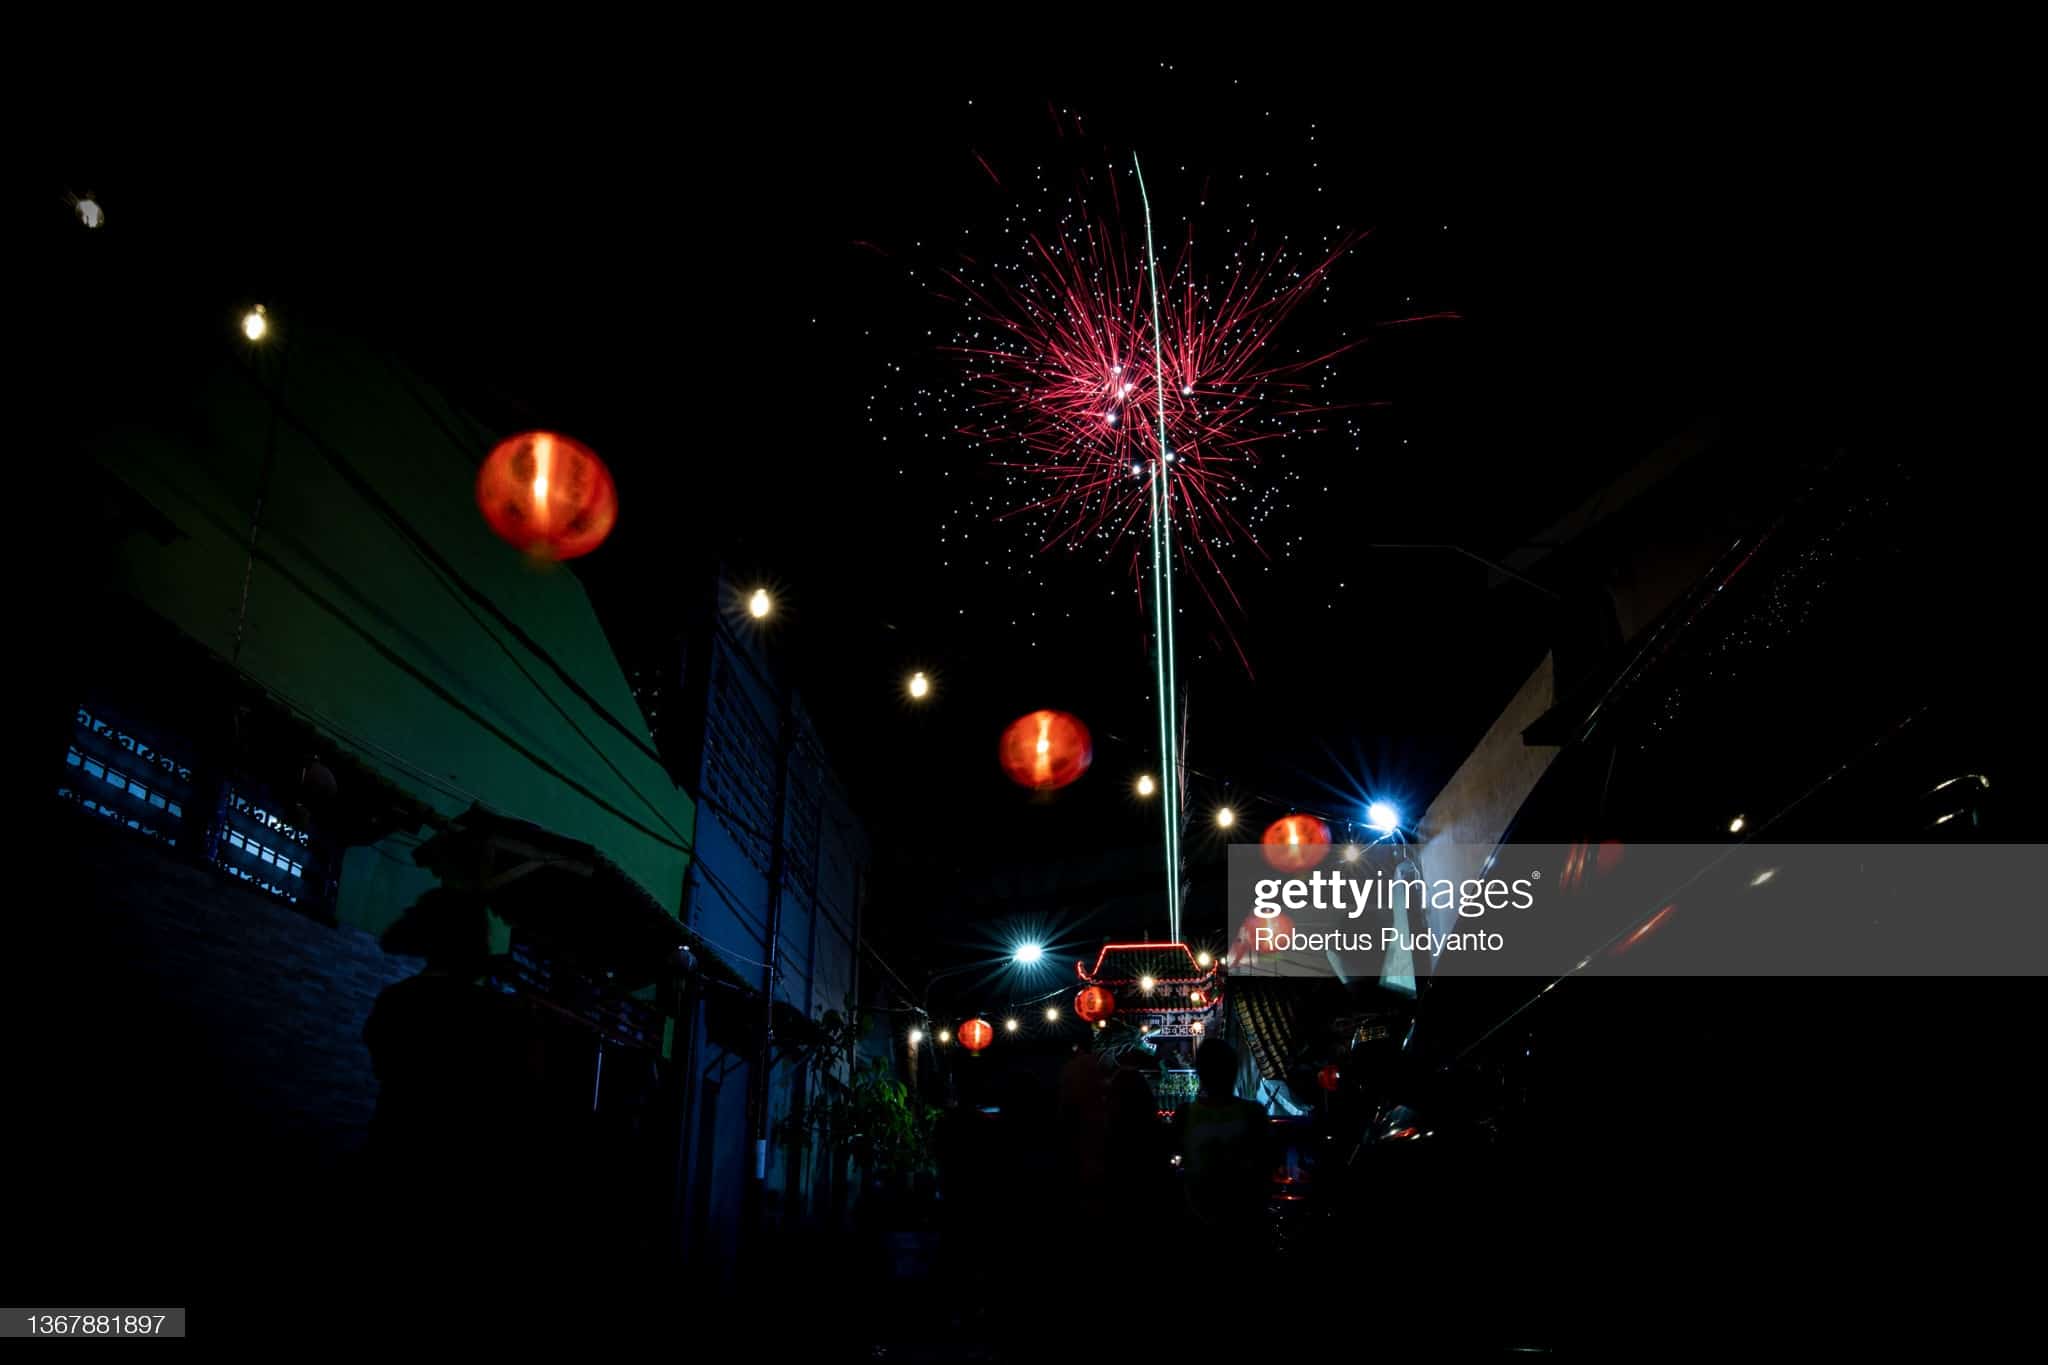 Pháo hoa rực sáng trên bầu trời ở một ngôi làng người Hoa tại thành phố Surabaya, Indonesia hôm 1/2 (mùng 1 Tết). Cộng đồng người Hoa ở Đông Nam Á đang đón Tết Nguyên đán rất sôi nổi và từng bừng, bất chấp dịch bệnh Covid-19. Ảnh Getty